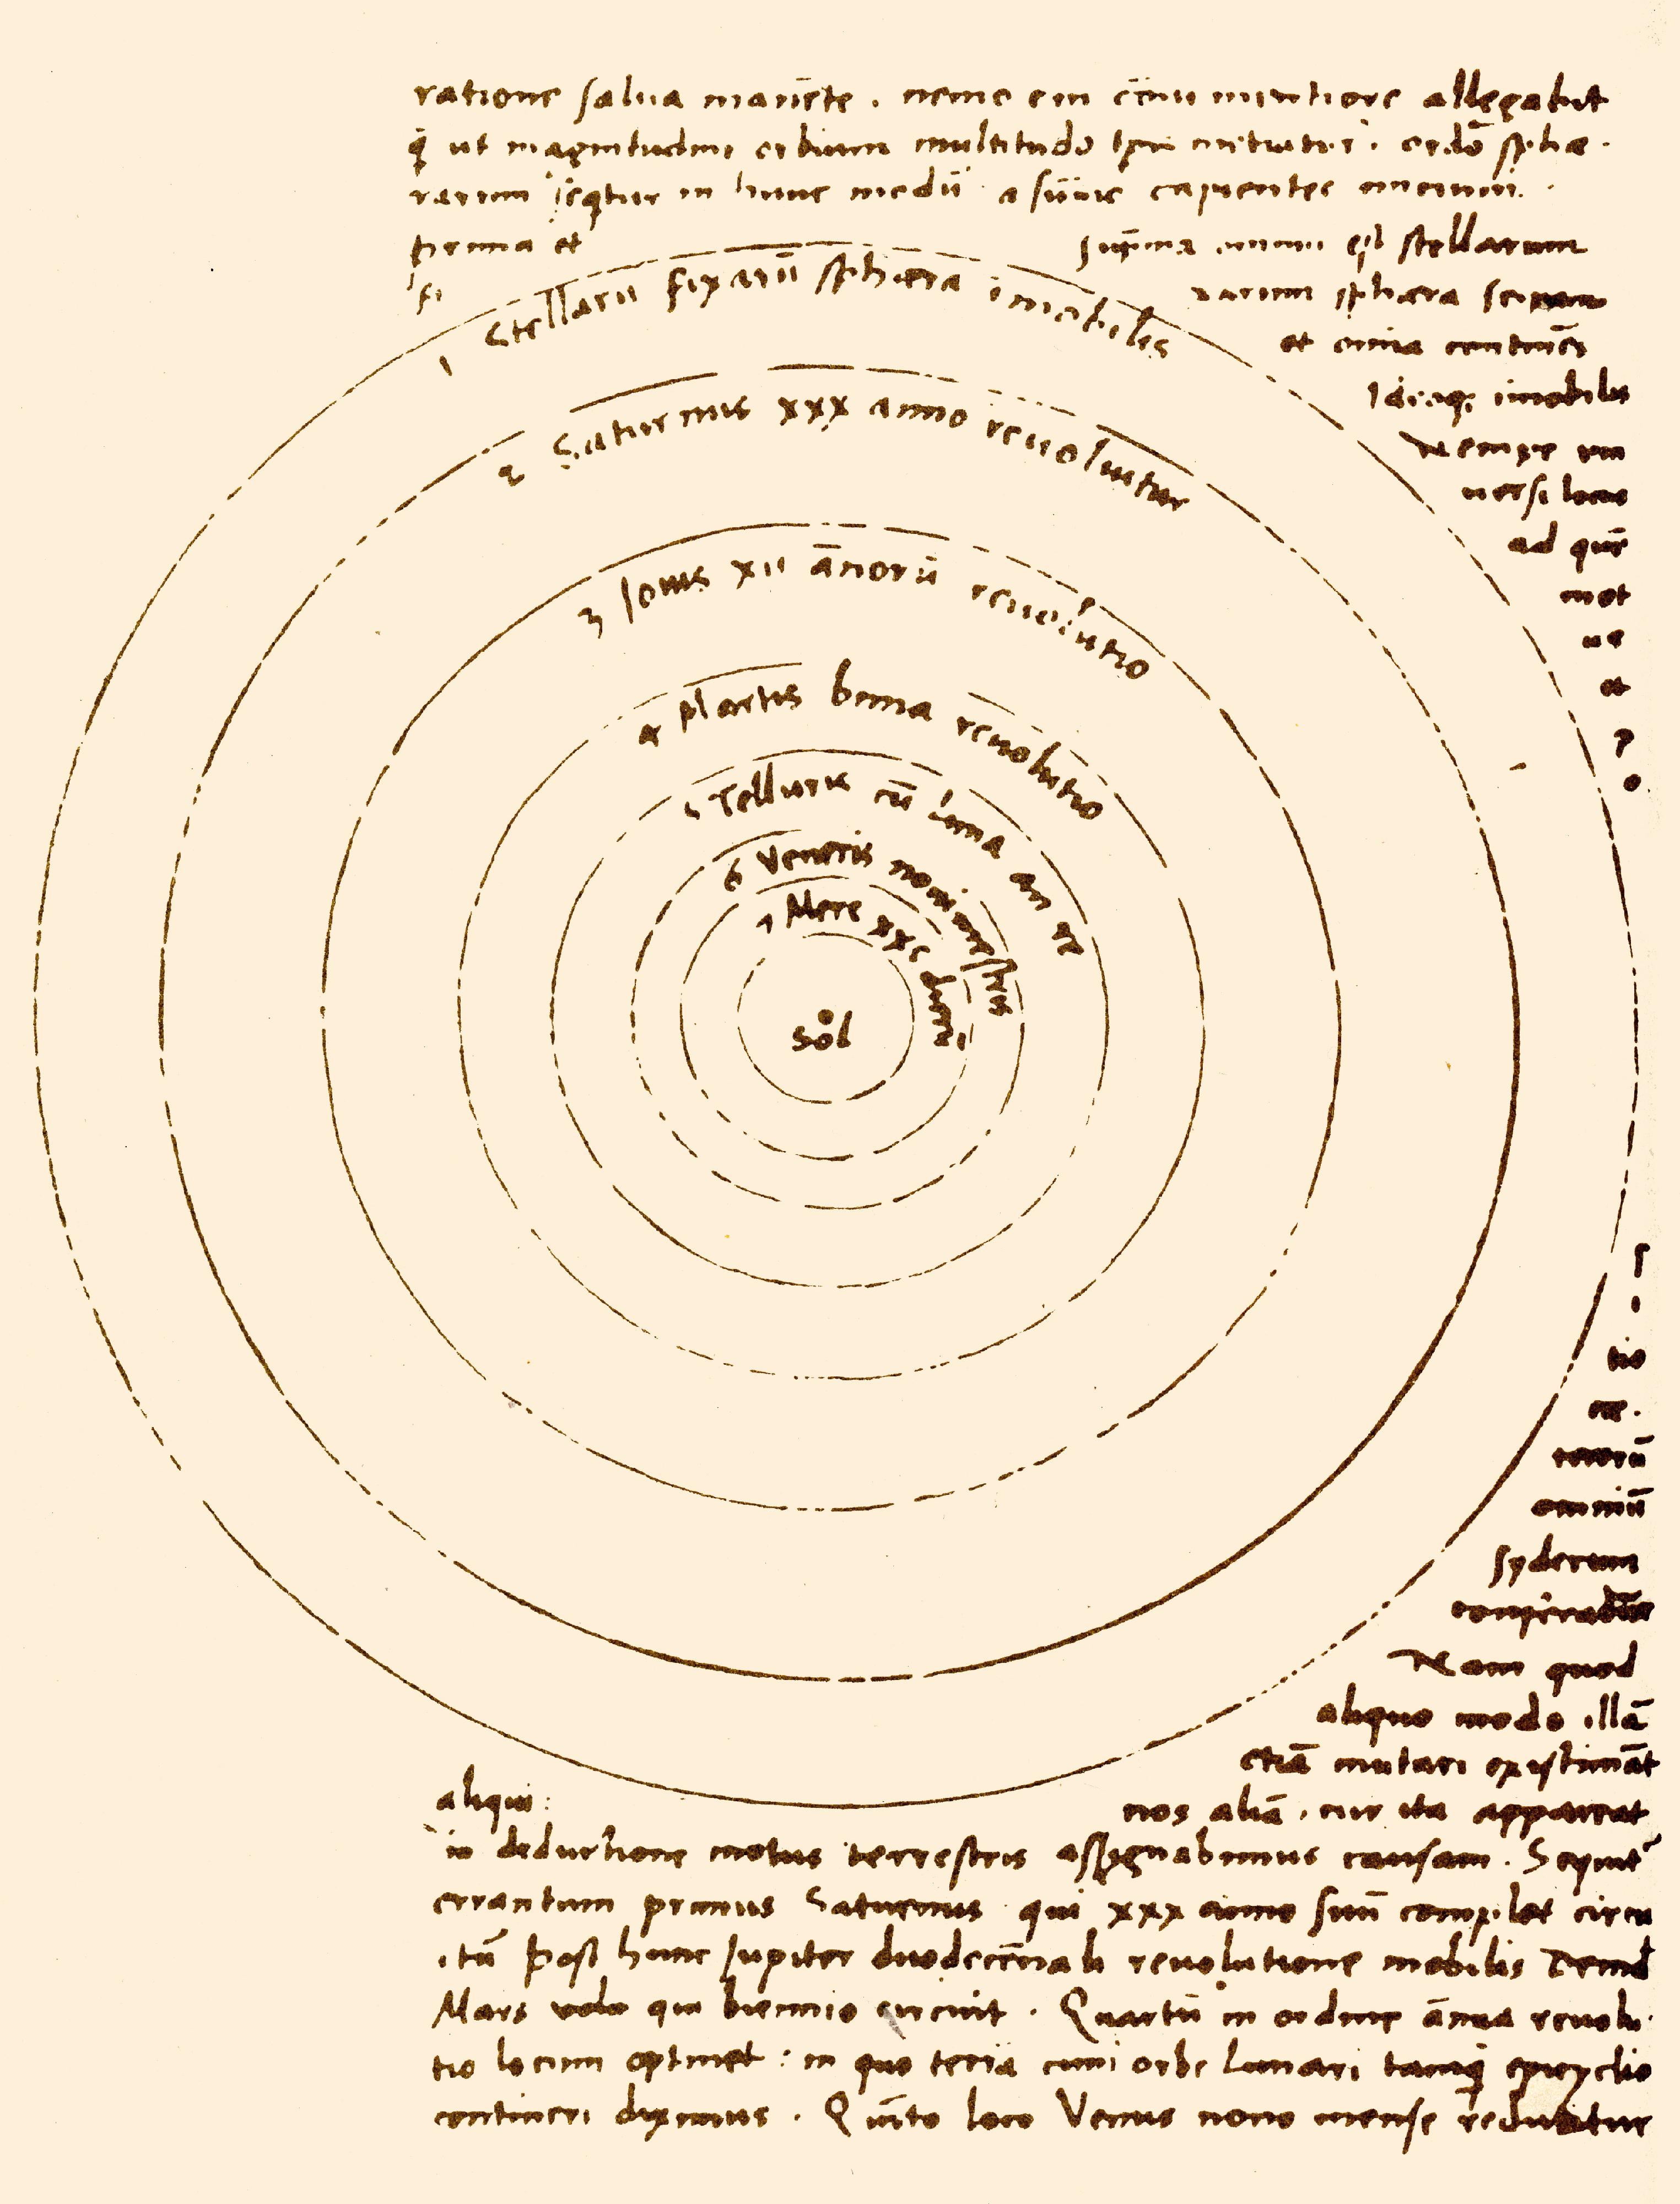 今年是著名波蘭天文學家尼古拉．哥白尼誕生550周年，香港太空館明日（六月二十一日）起推出「尼古拉．哥白尼——生平與成就」專題展覽。哥白尼在一五四三年出版《天體運行論》，提出以太陽為行星運動中心的「日心說」，為天文界帶來劃時代的改變。